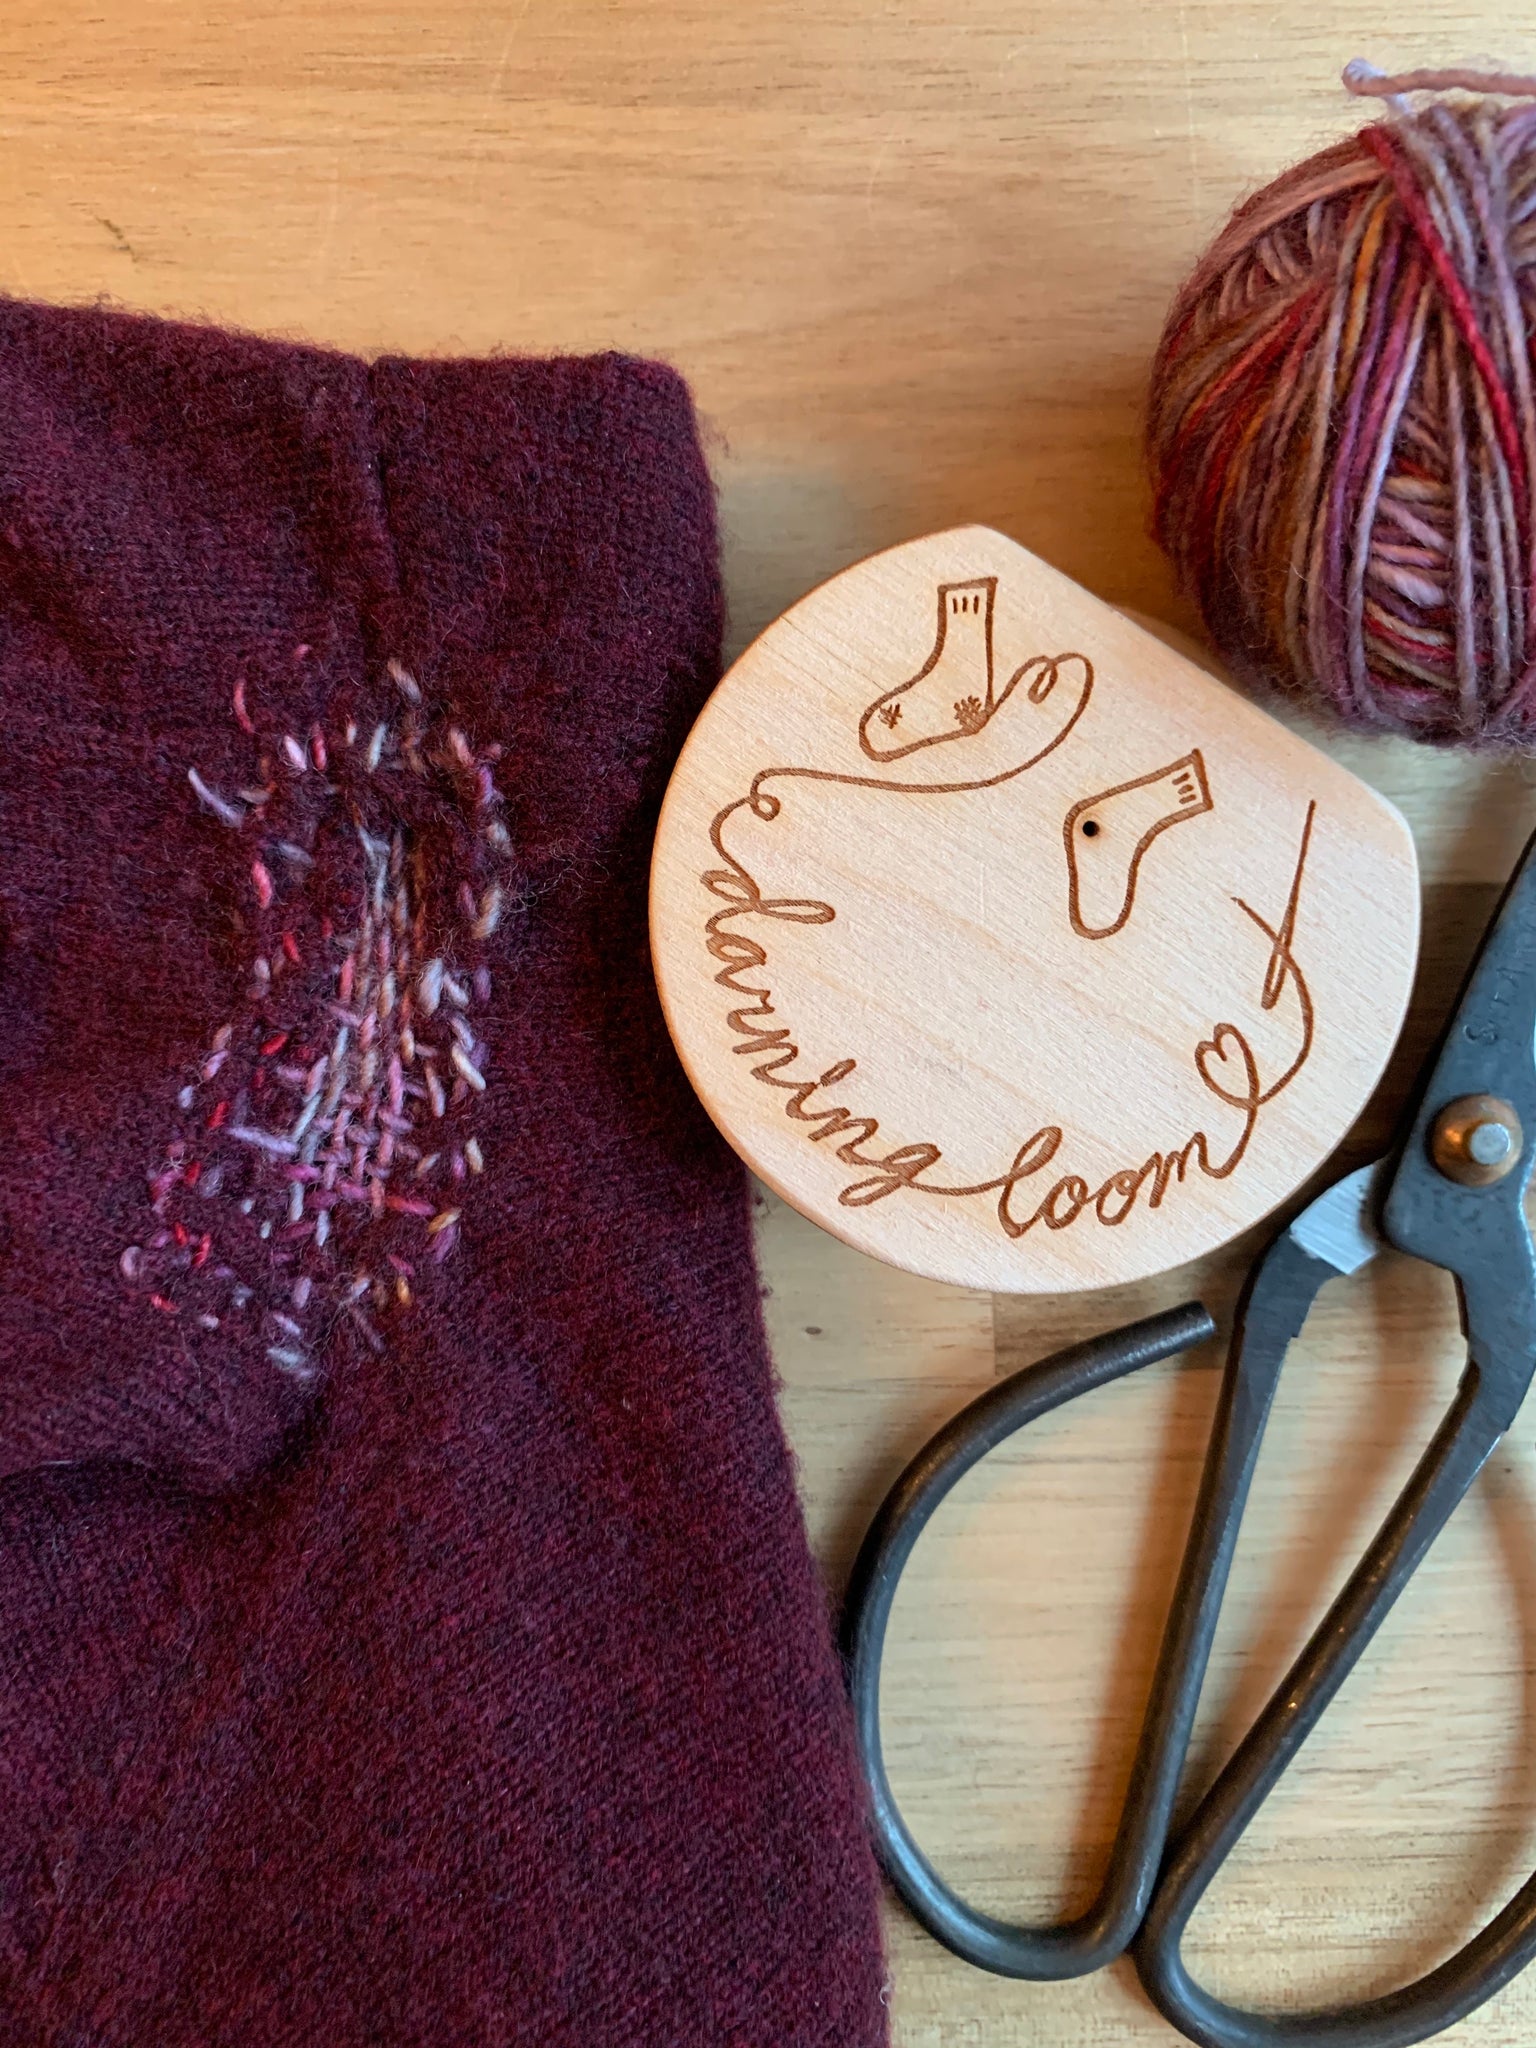 Darning Looms - Mending Kits for Knitting - Katrinkles